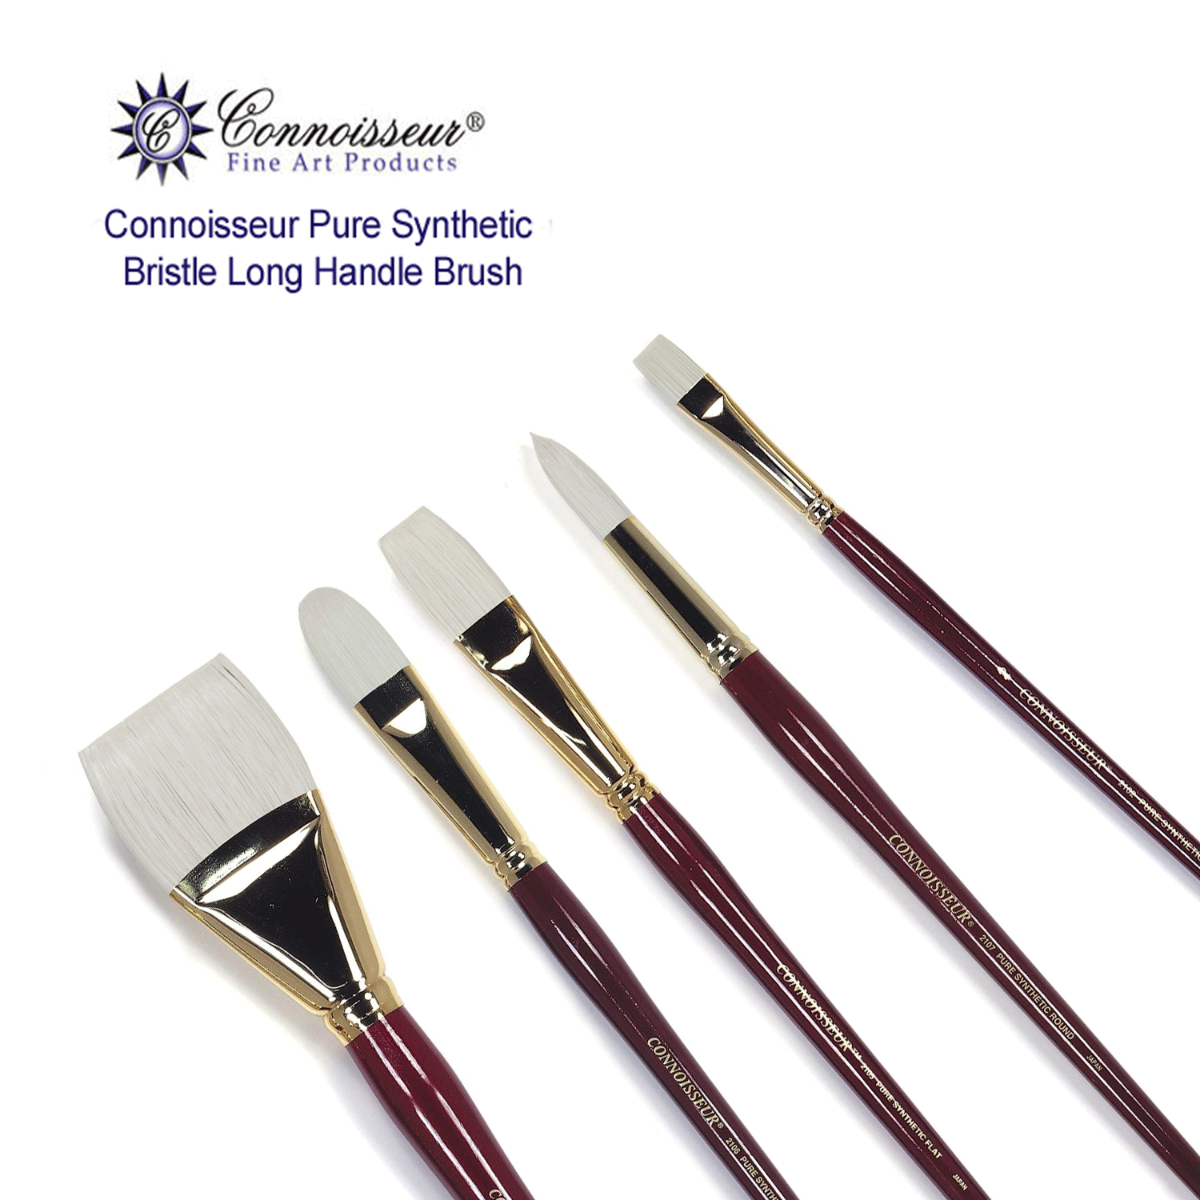 Connoisseur Pure Synthetic Bristle Long Handle Brush